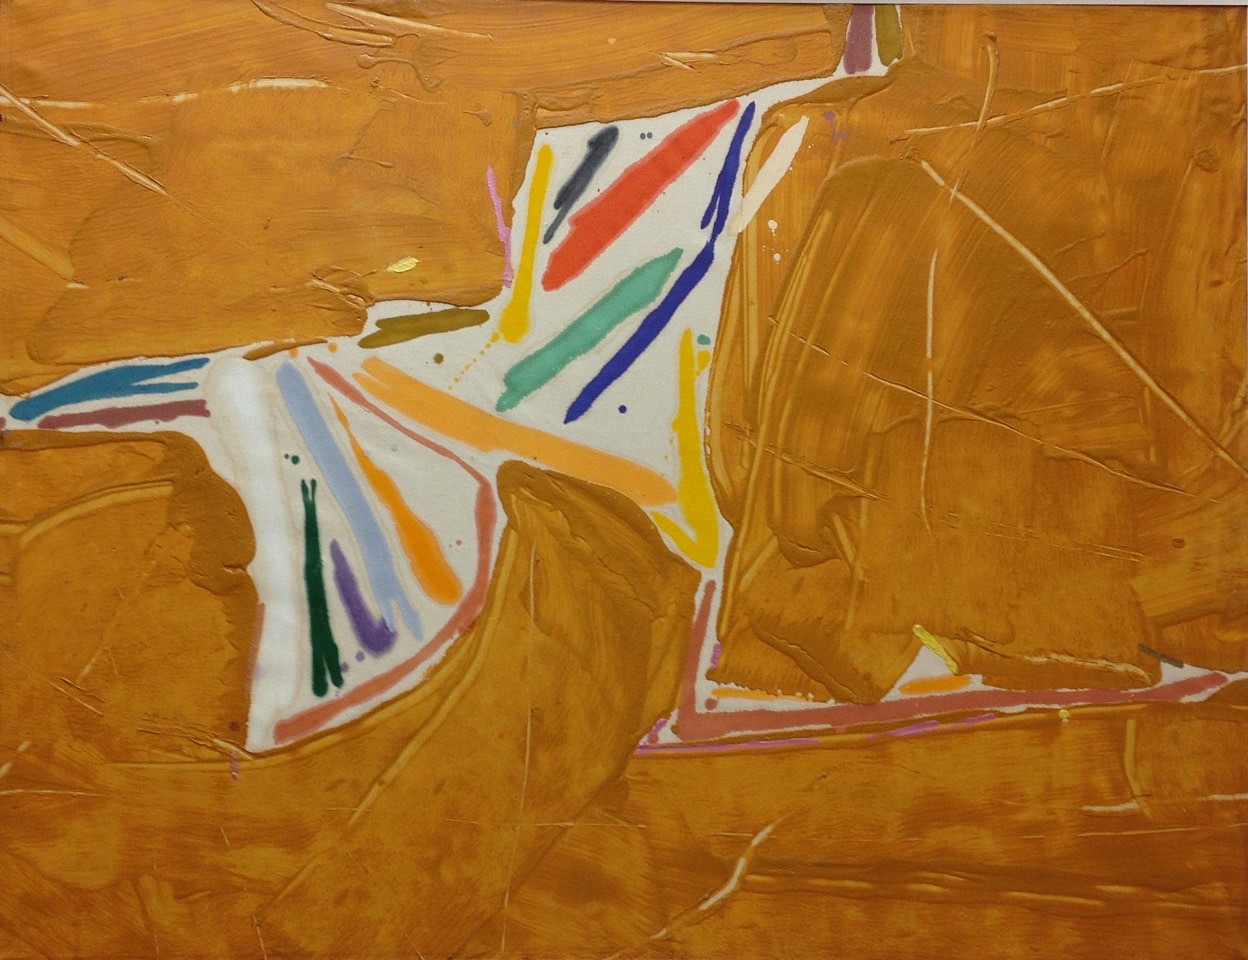 Kikuo Saito, Khrka, 1978
Oil on Canvas
SAIT0032